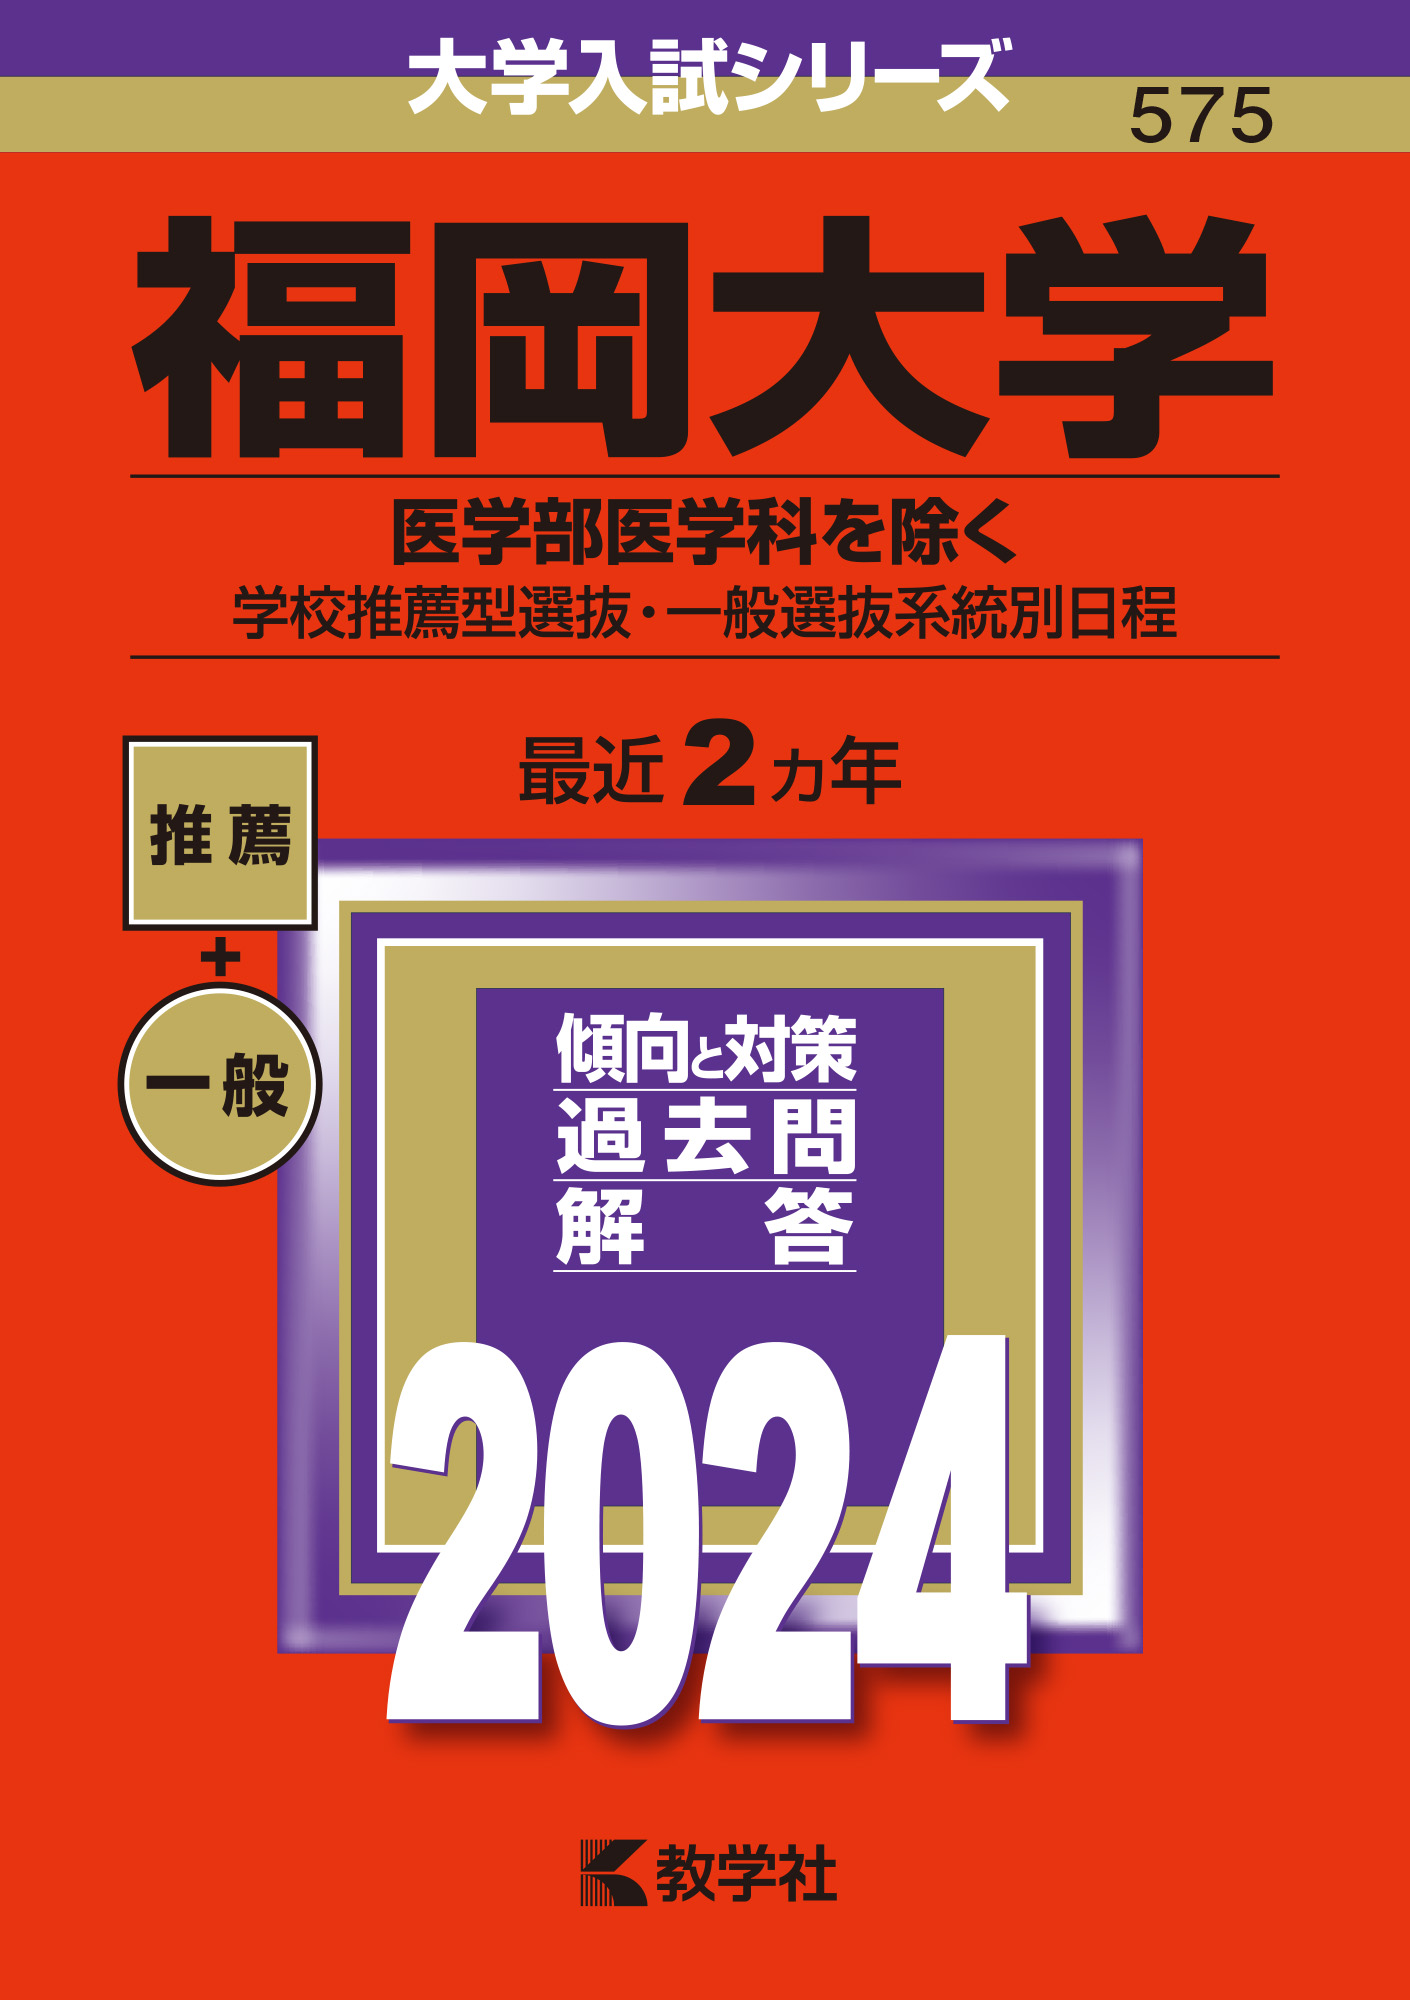 福岡大学 (2023年度) (医学部入試問題と解答) - 学習参考書